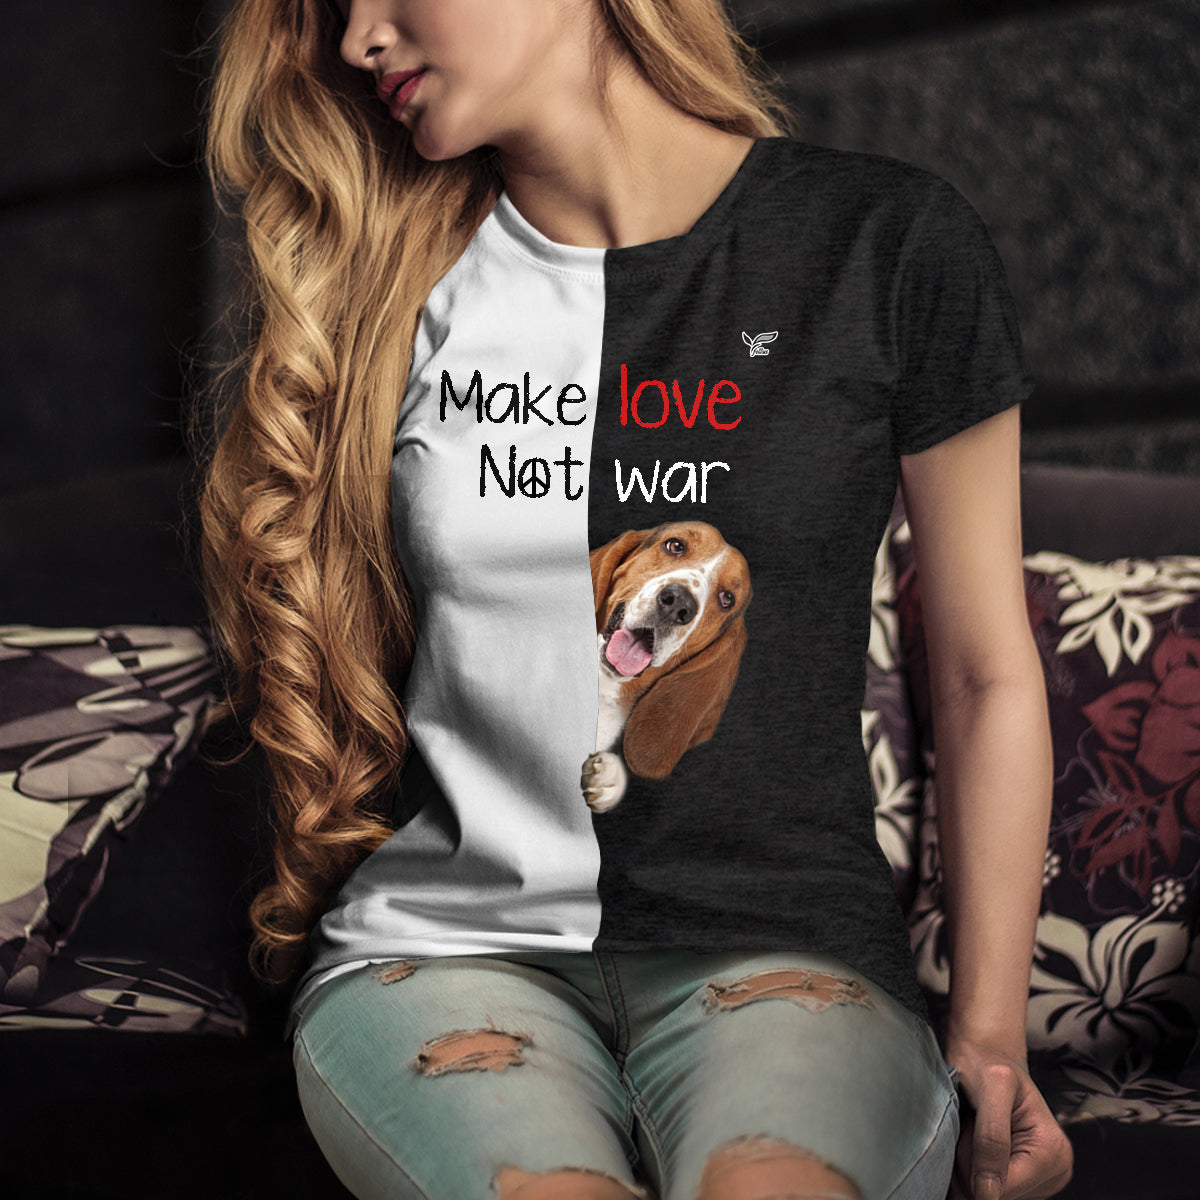 Make Love Not War - Basset Hound T-Shirt V1